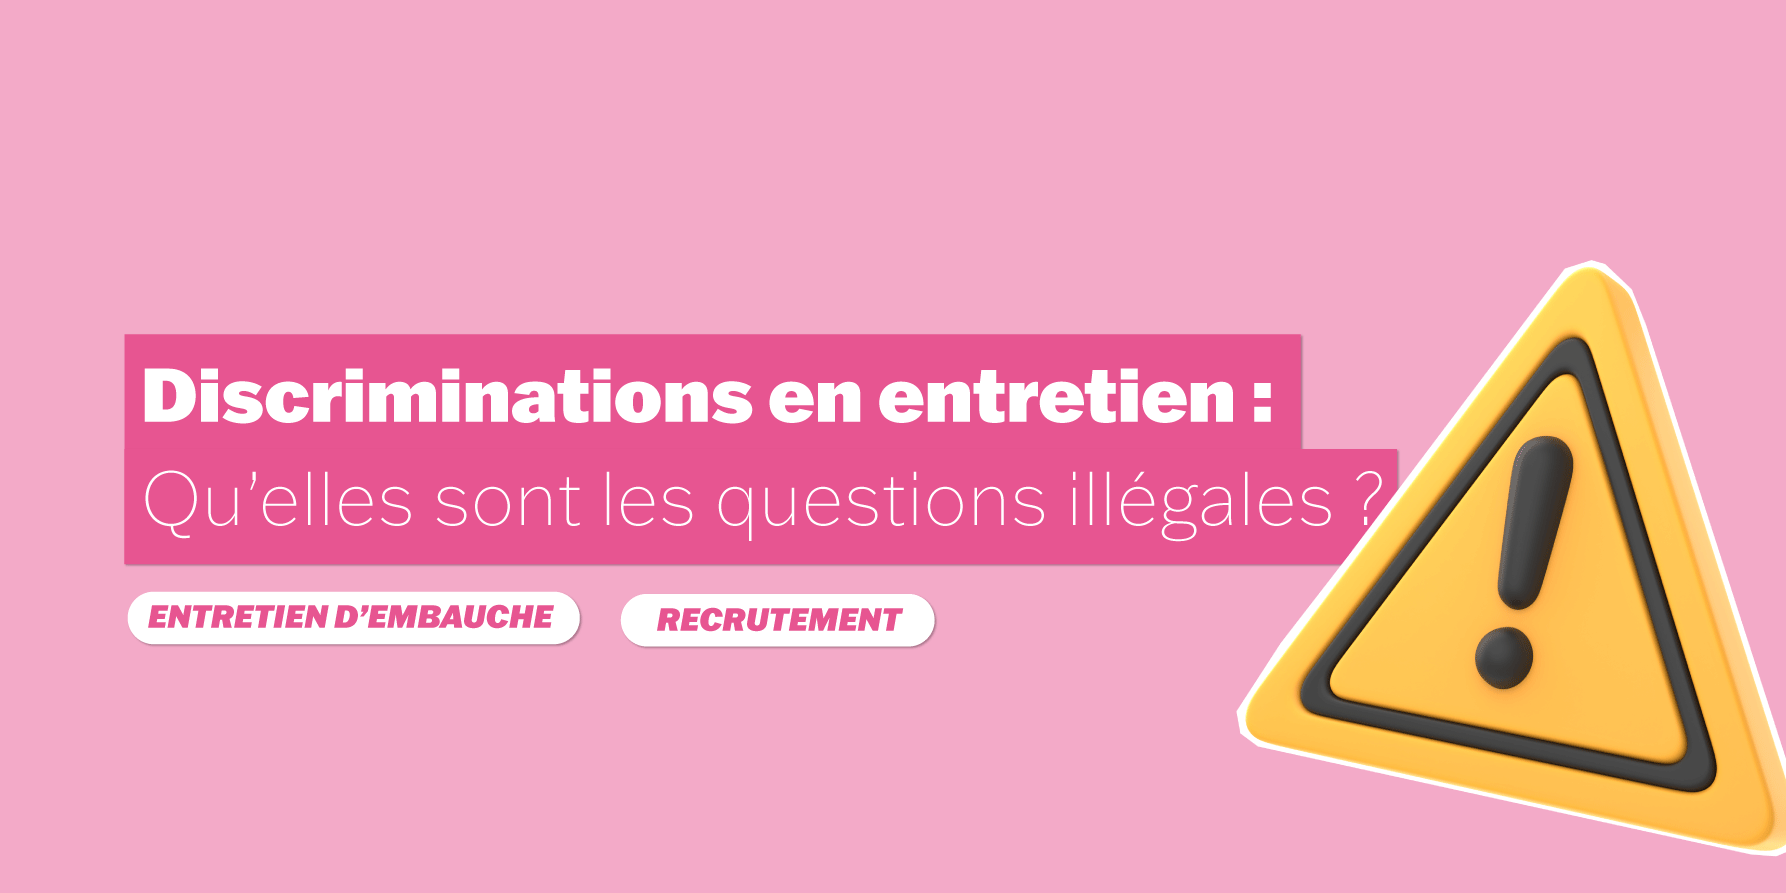 Les discriminations en entretien d'embauche : les questions illégales. Le cabinet de recrutement Un Autre Rhegard à Rennes